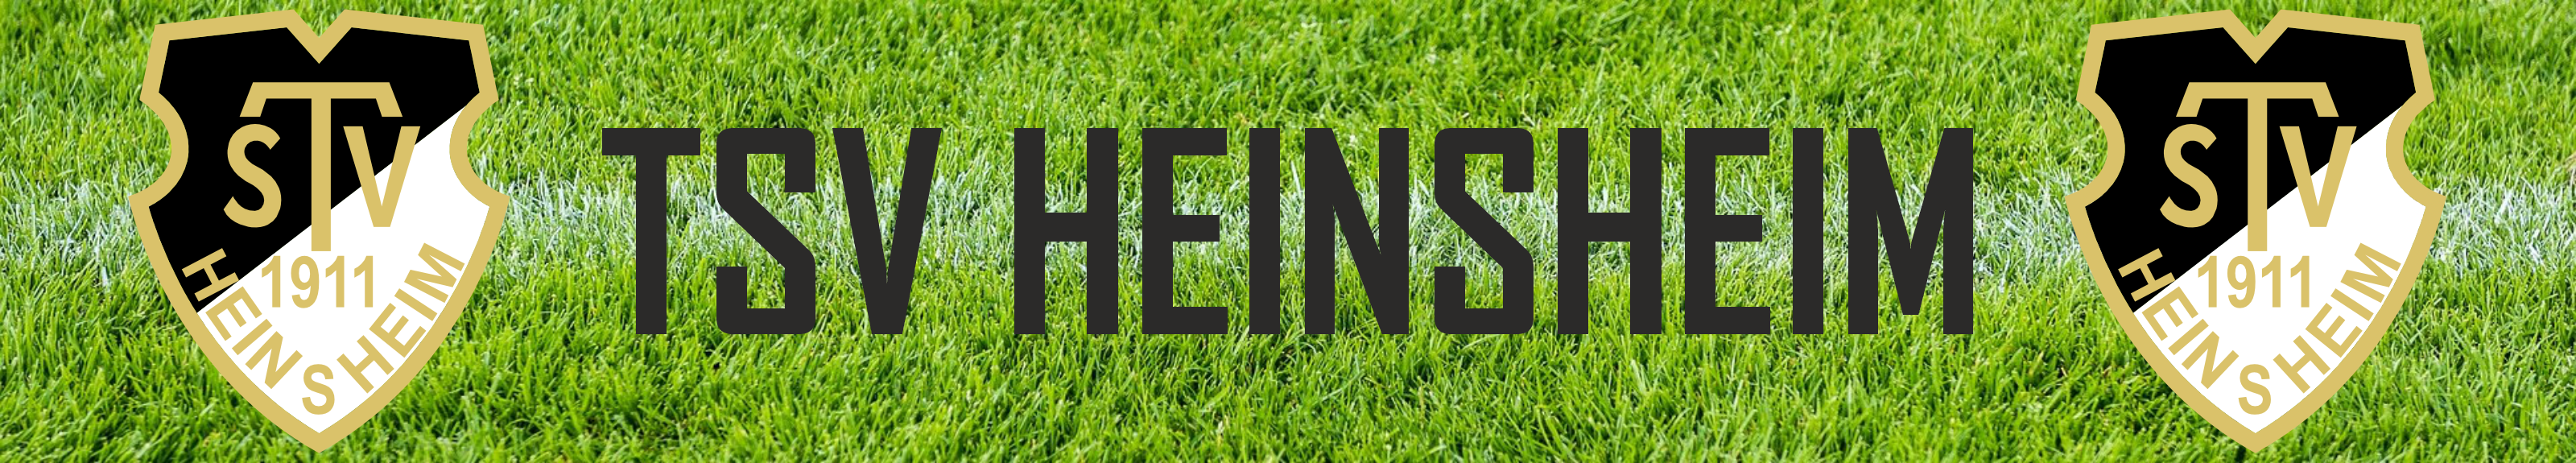 TSV Heinsheim Fussball Title Image